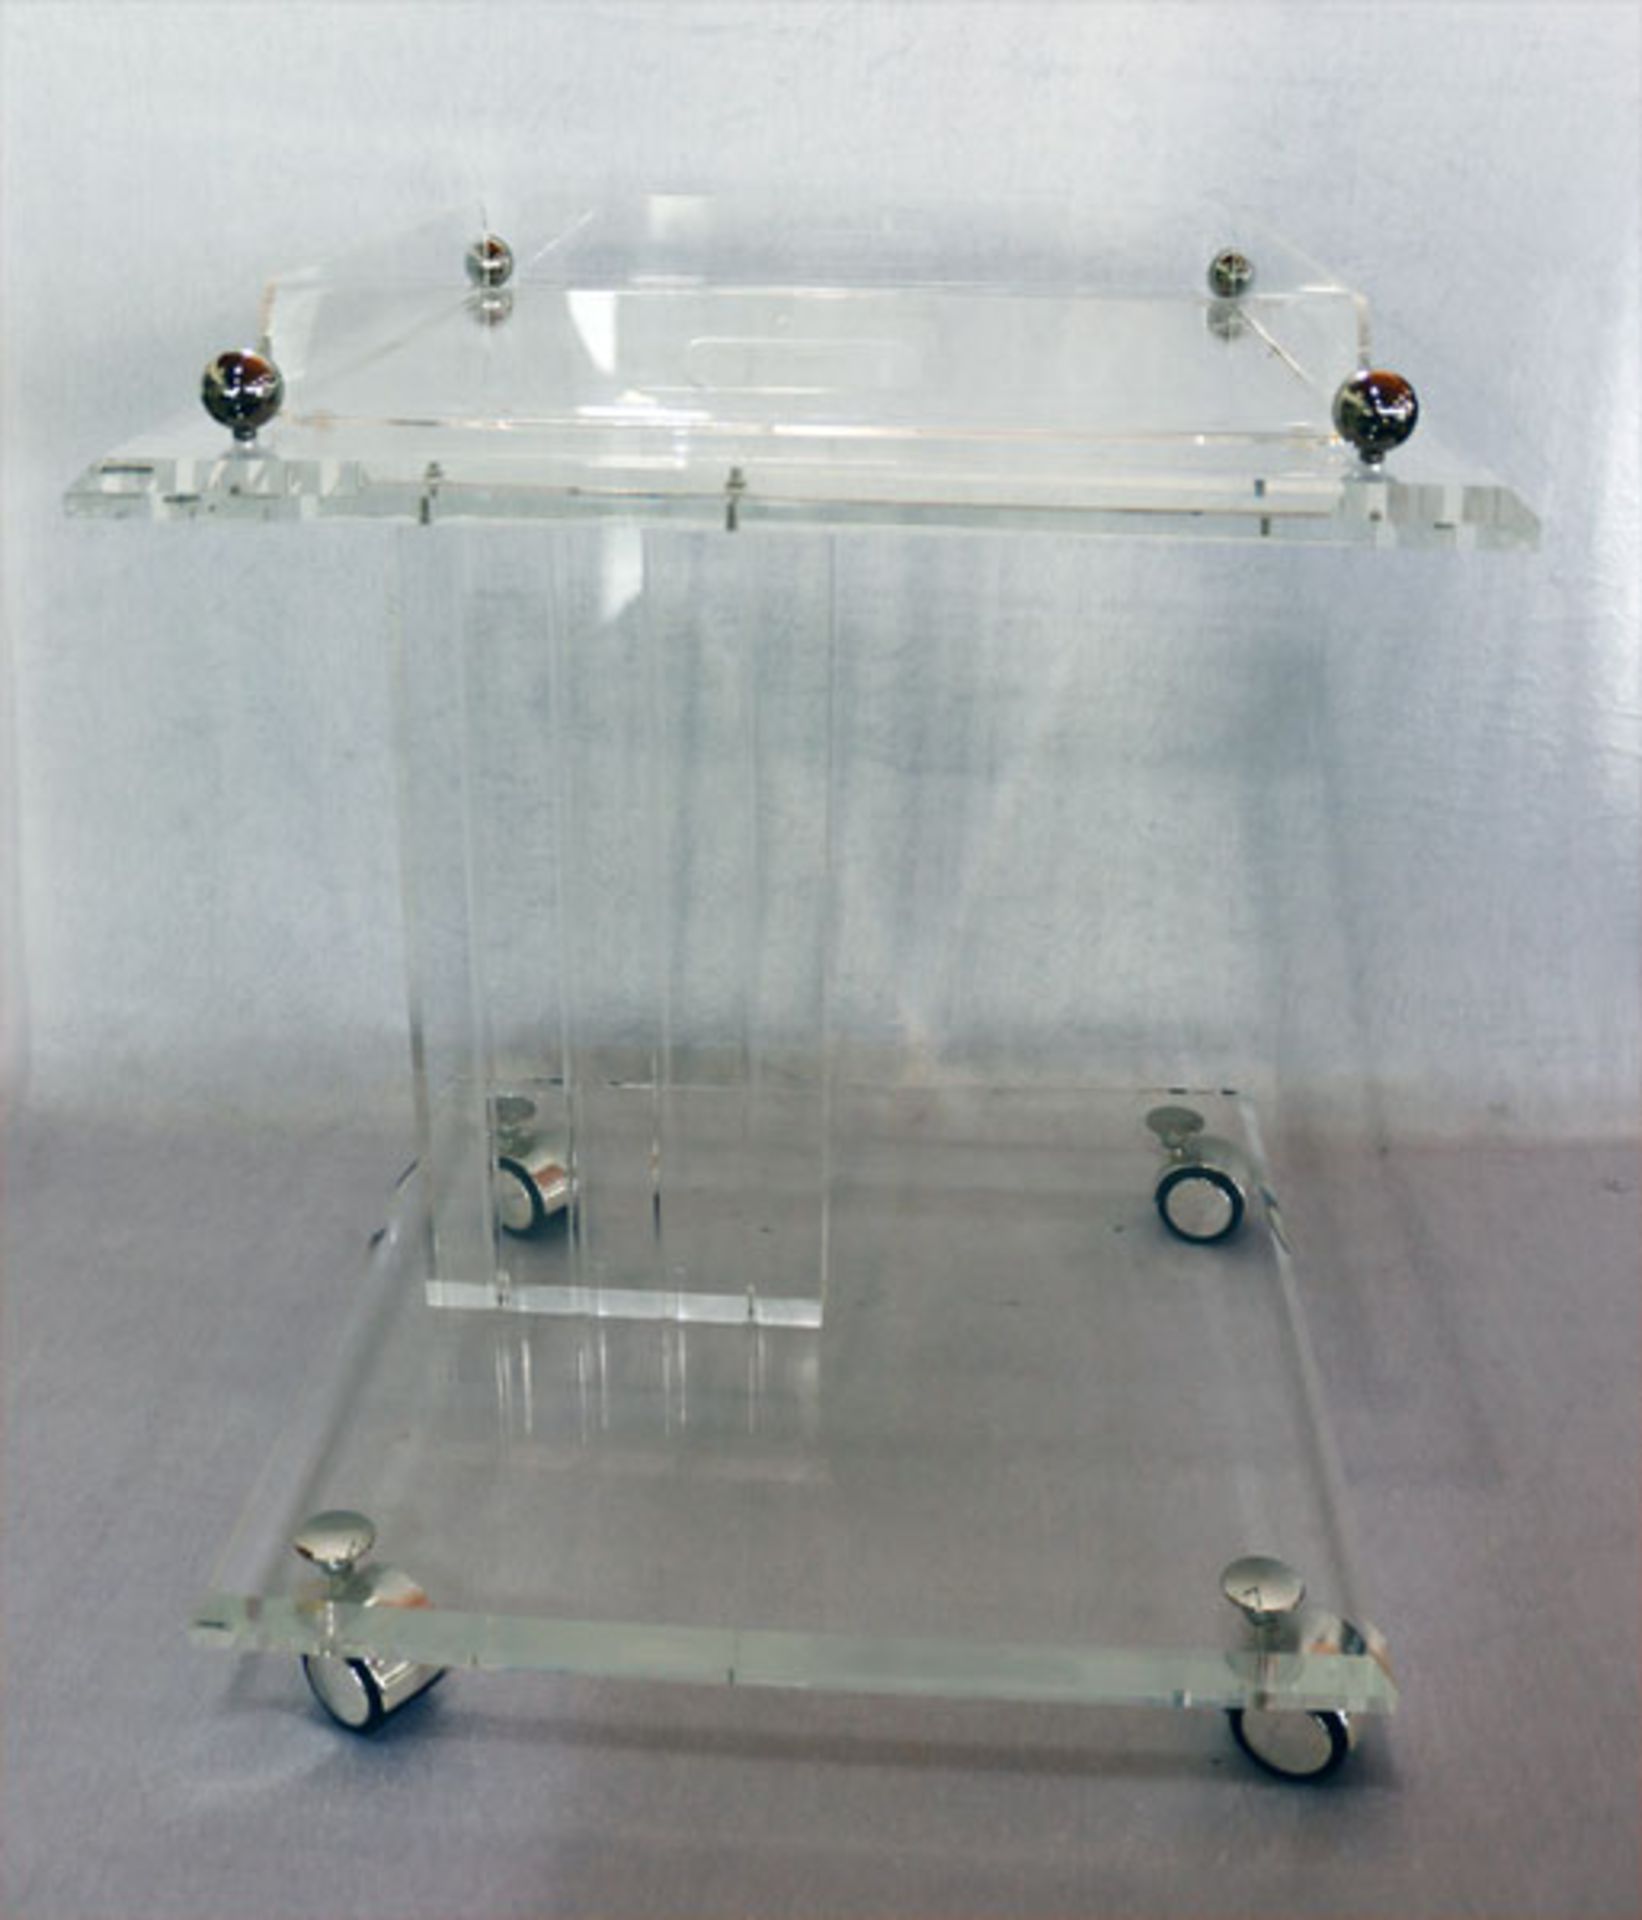 Acryl Beistelltisch mit Ablageboden, Tablett abnehmbar, H 57 cm, B 50 cm, T 50 cm, Gebrauchsspuren